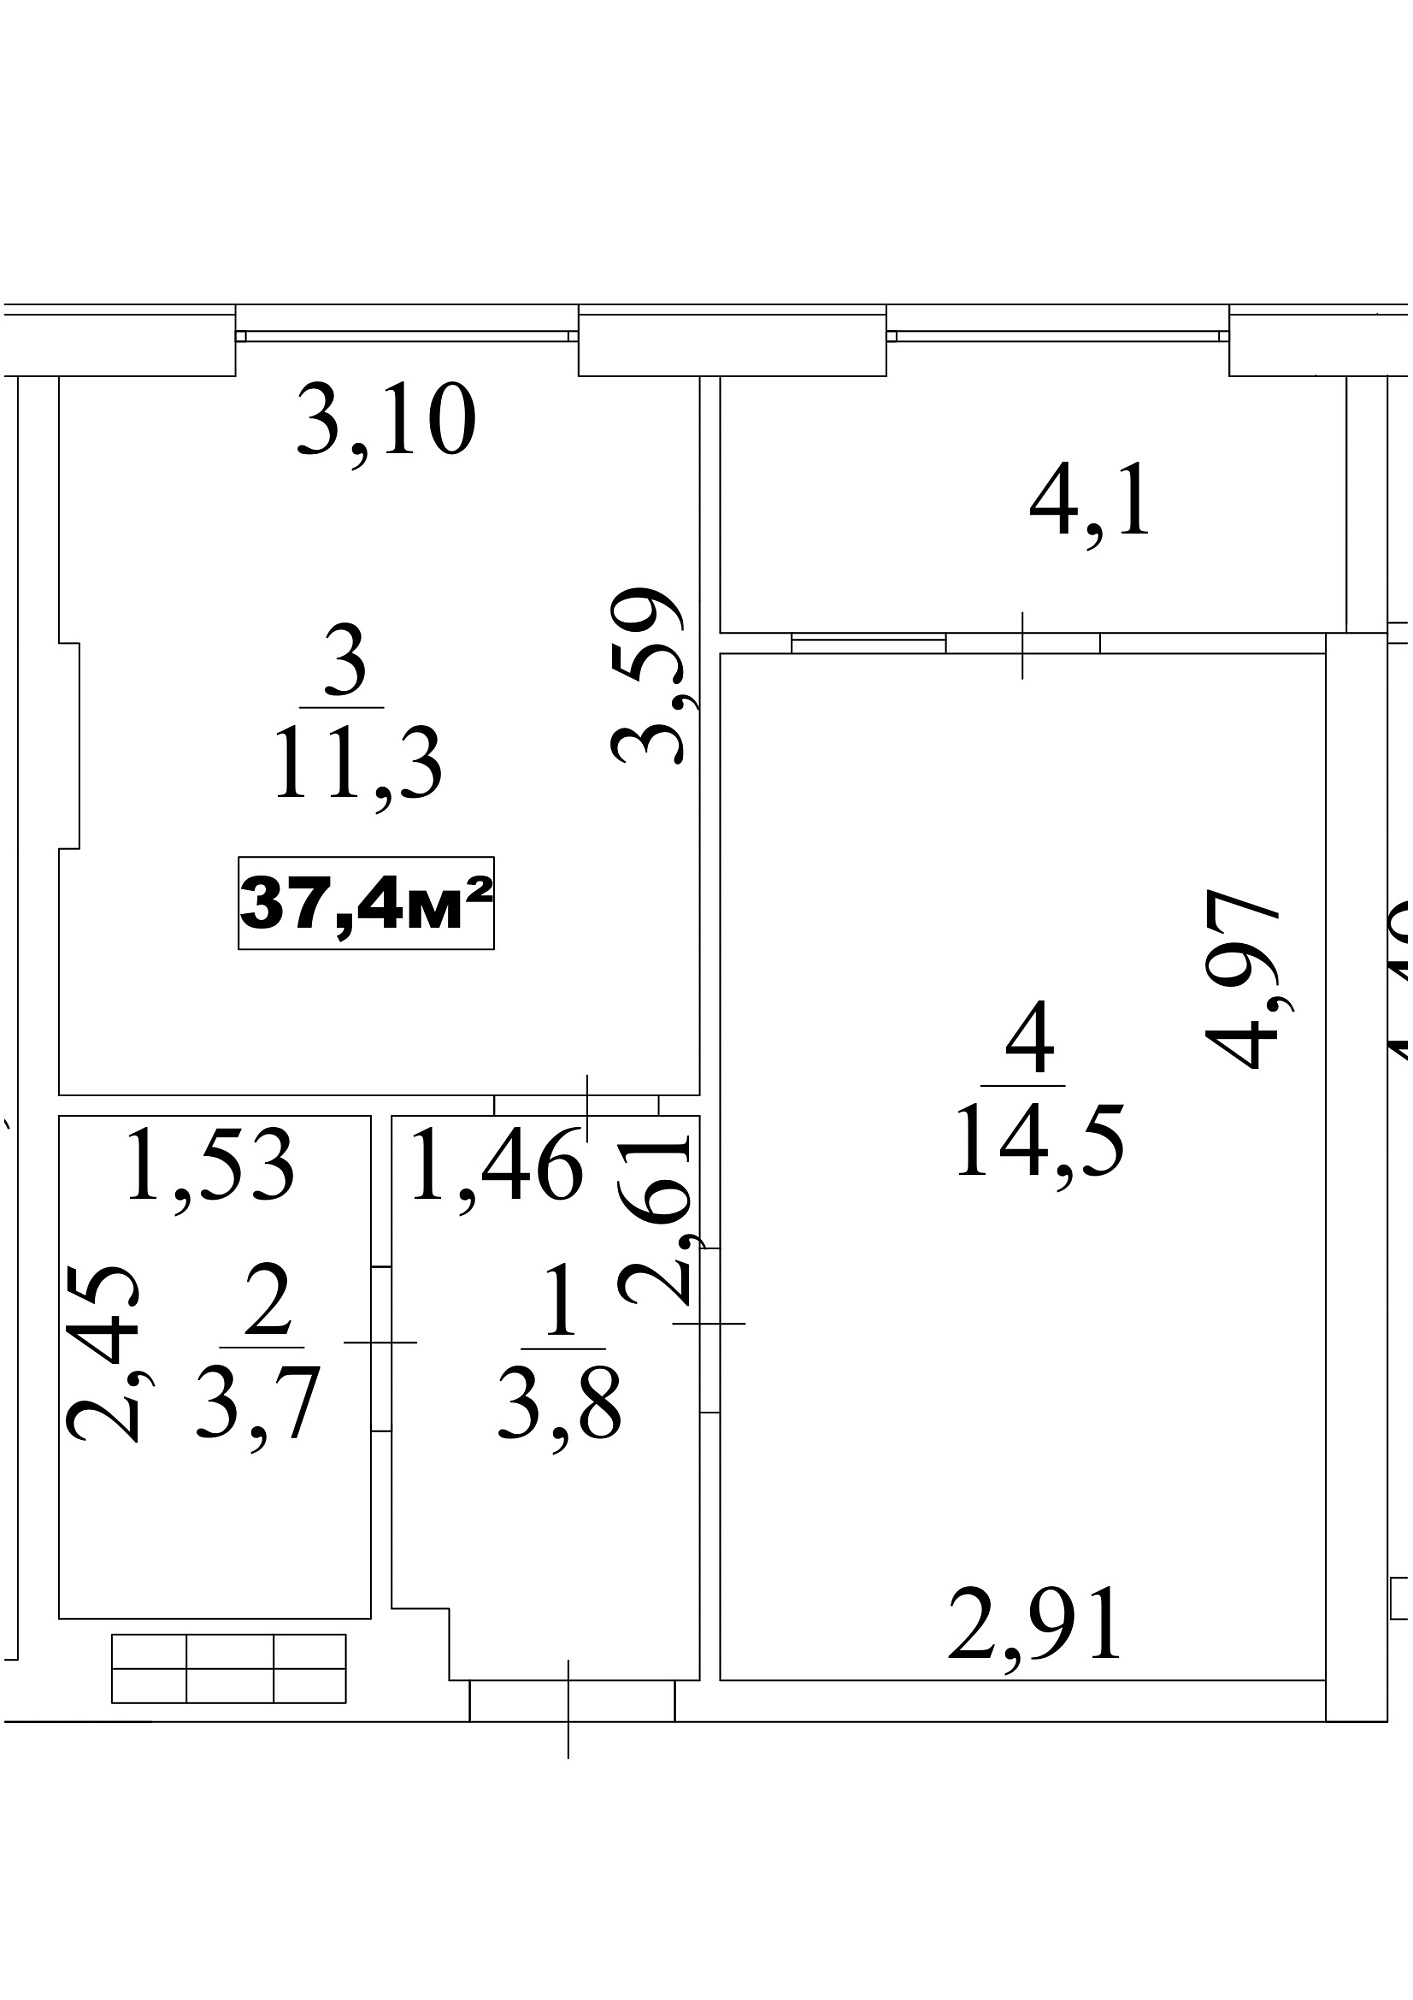 Планування 1-к квартира площею 37.4м2, AB-10-10/0088а.